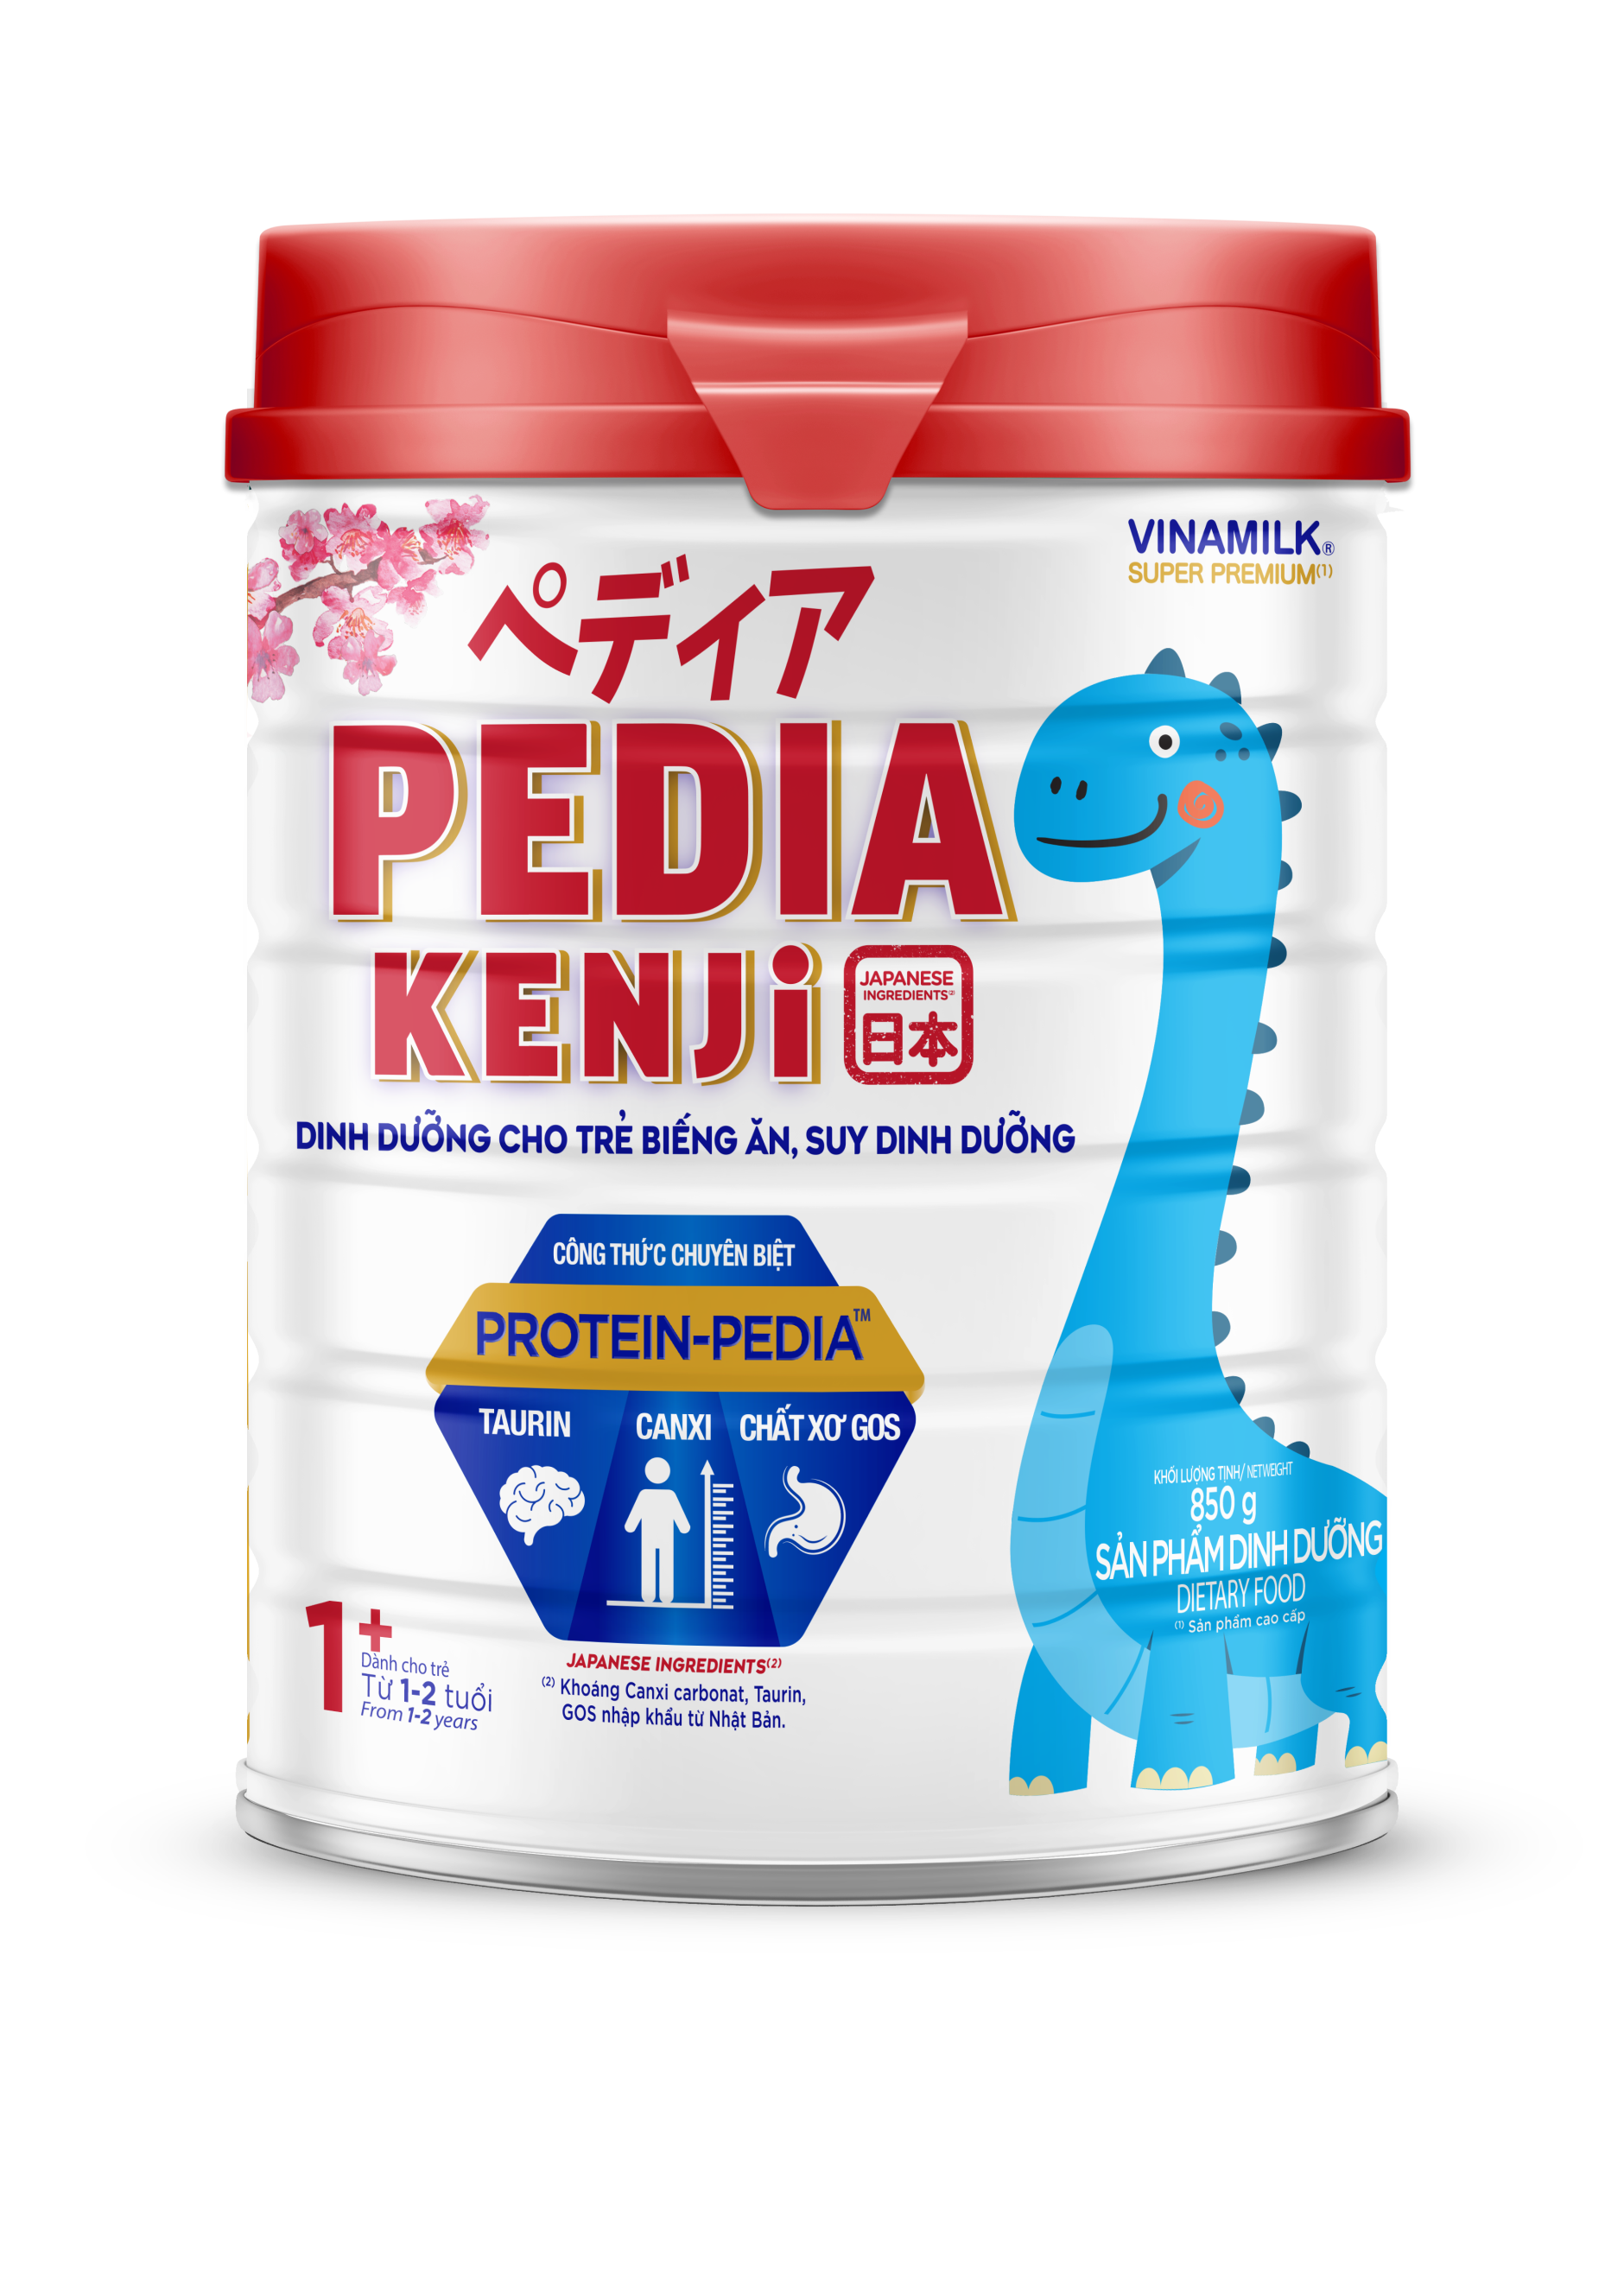 Sữa bột Pedia Kenji 1+ (cho trẻ từ 1 đến 2 tuổi) Giải pháp chuyên biệt từ Nhật Bản cho trẻ biếng ăn, suy dinh dưỡng